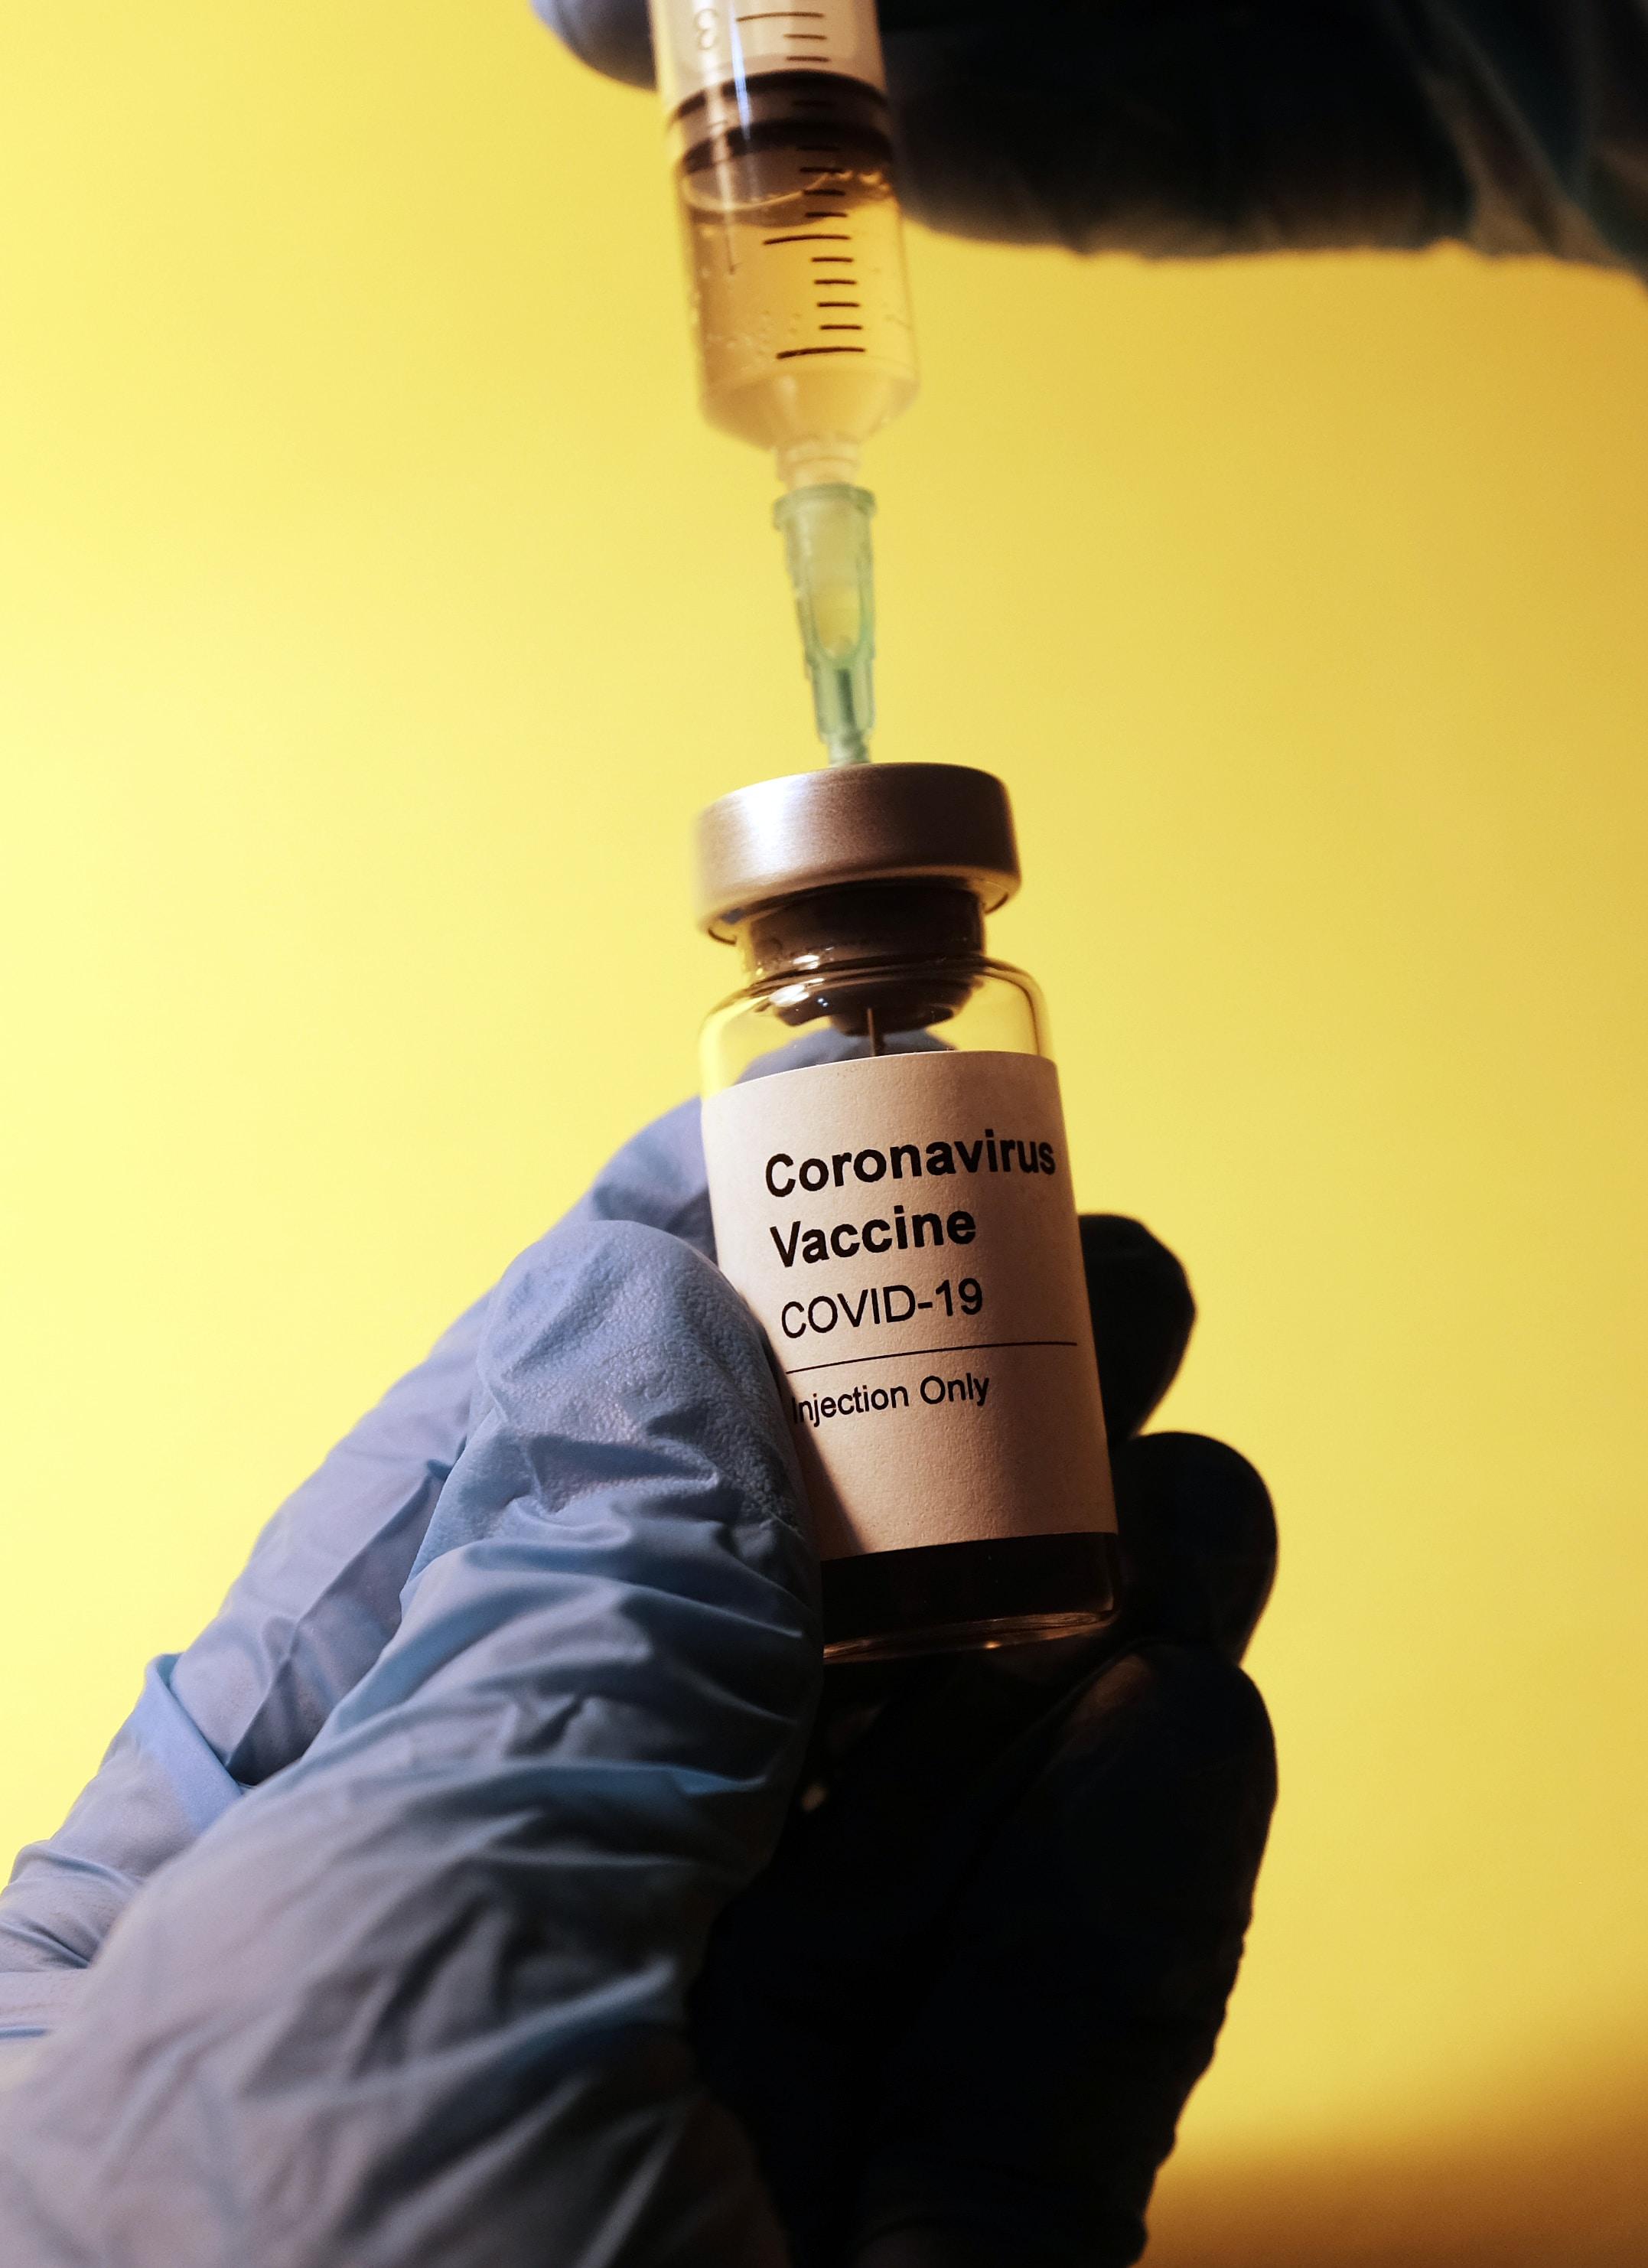 Covid-19: Uma em cada quatro vacinas compradas por Portugal foram revendidas ou doadas